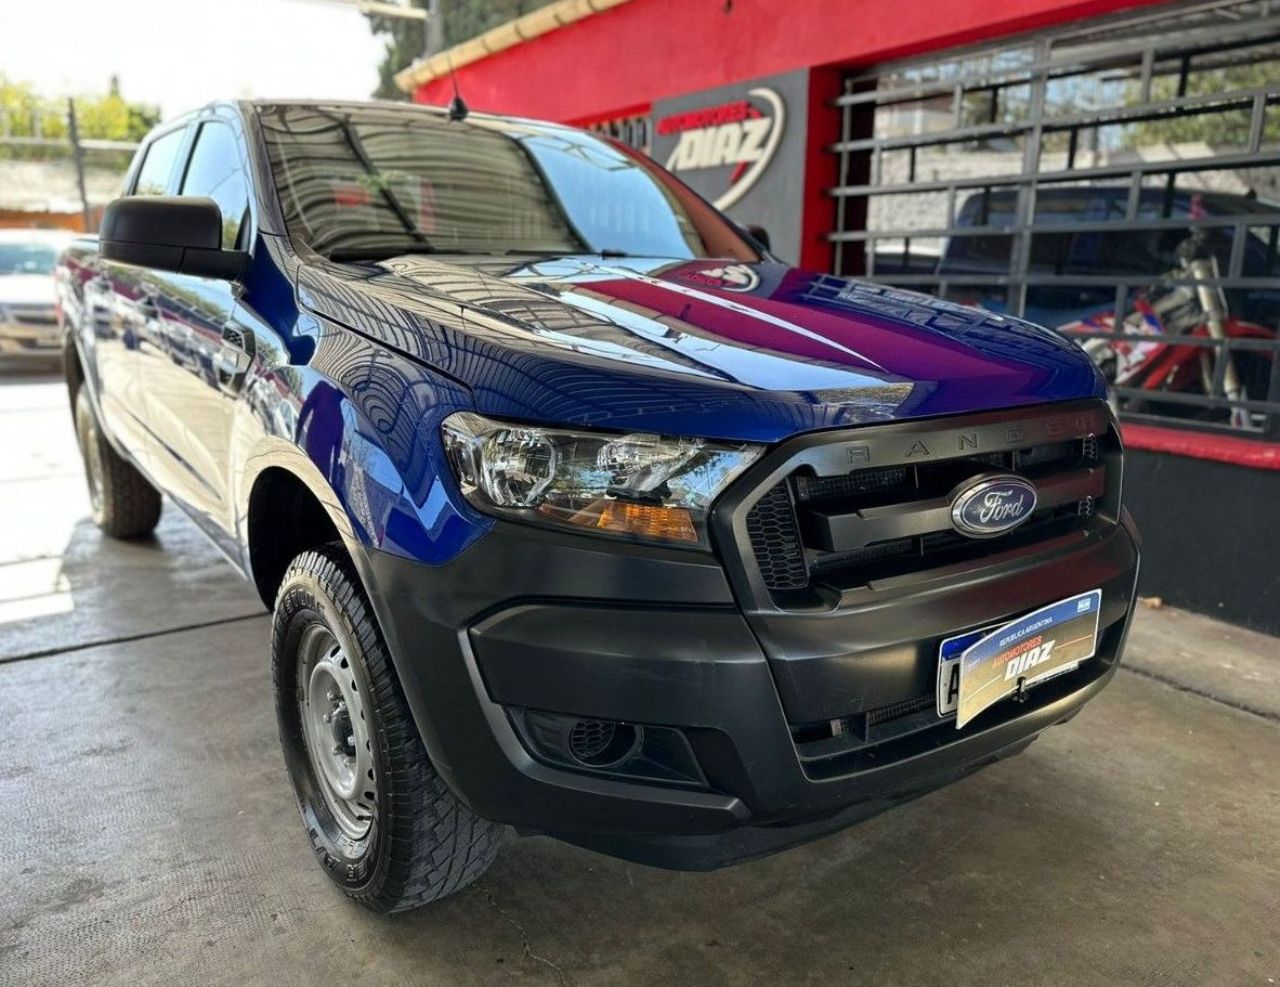 Ford Ranger Usada en San Juan, deRuedas